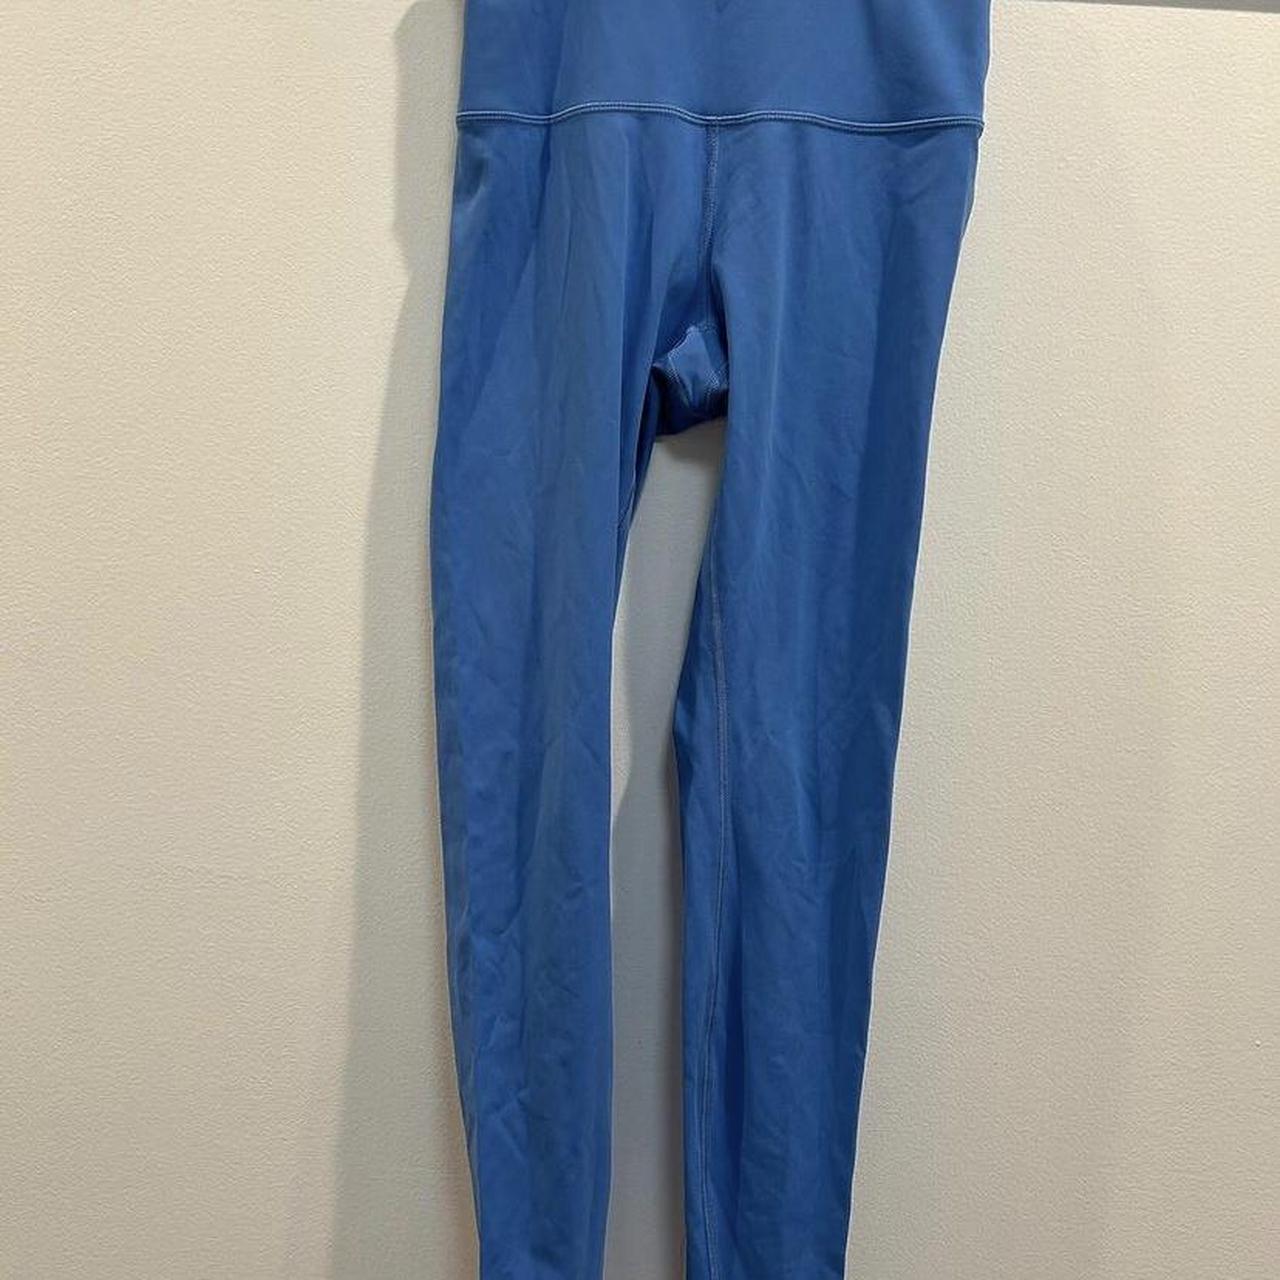 Lululemon wonder under leggings Size 6 electric blue - Depop